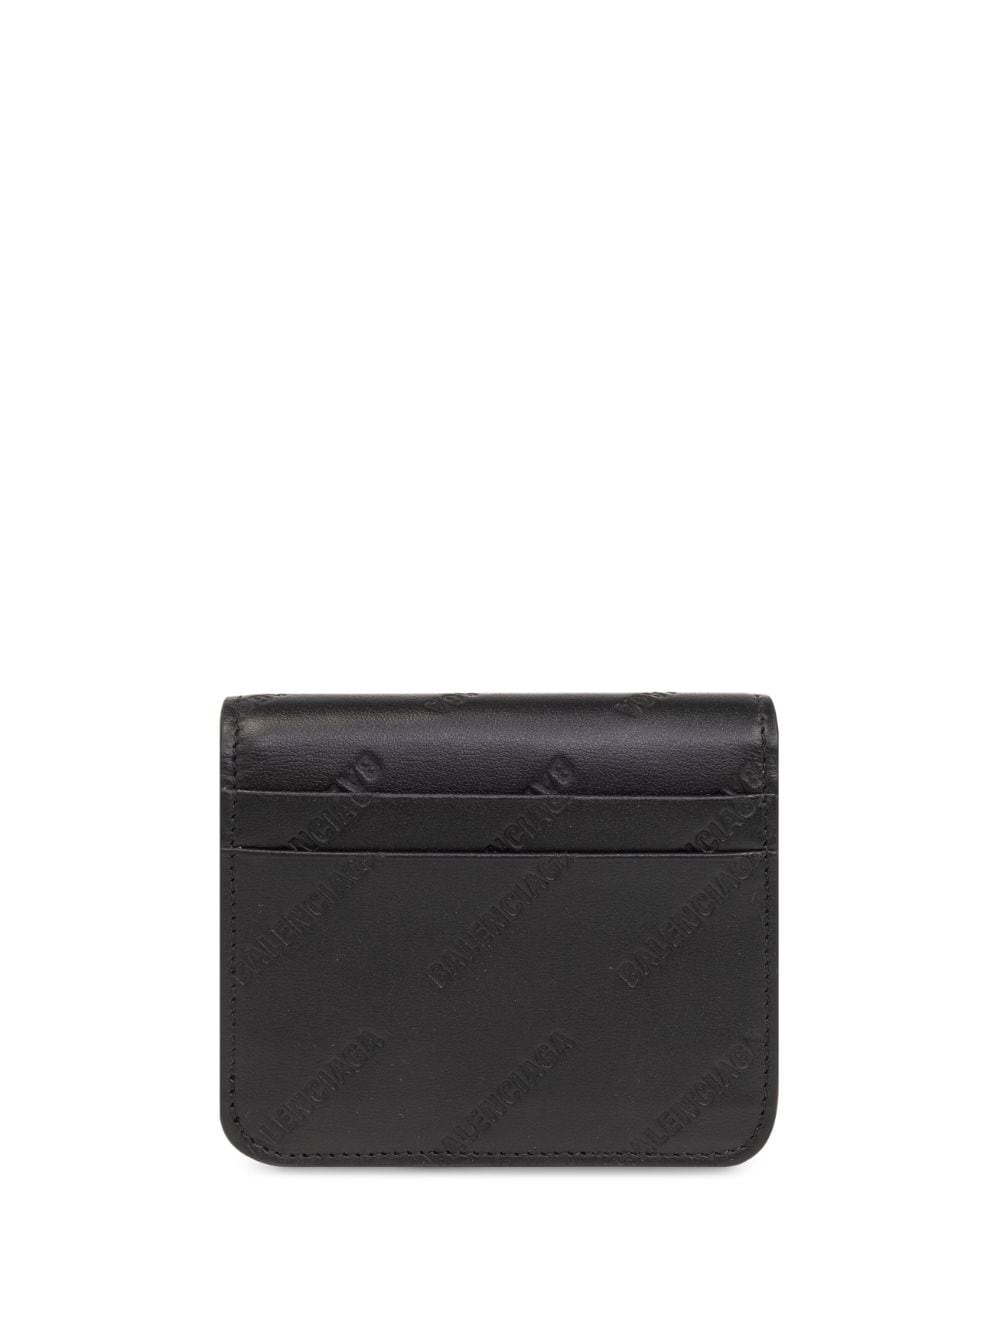 logo-debossed leather wallet - 2